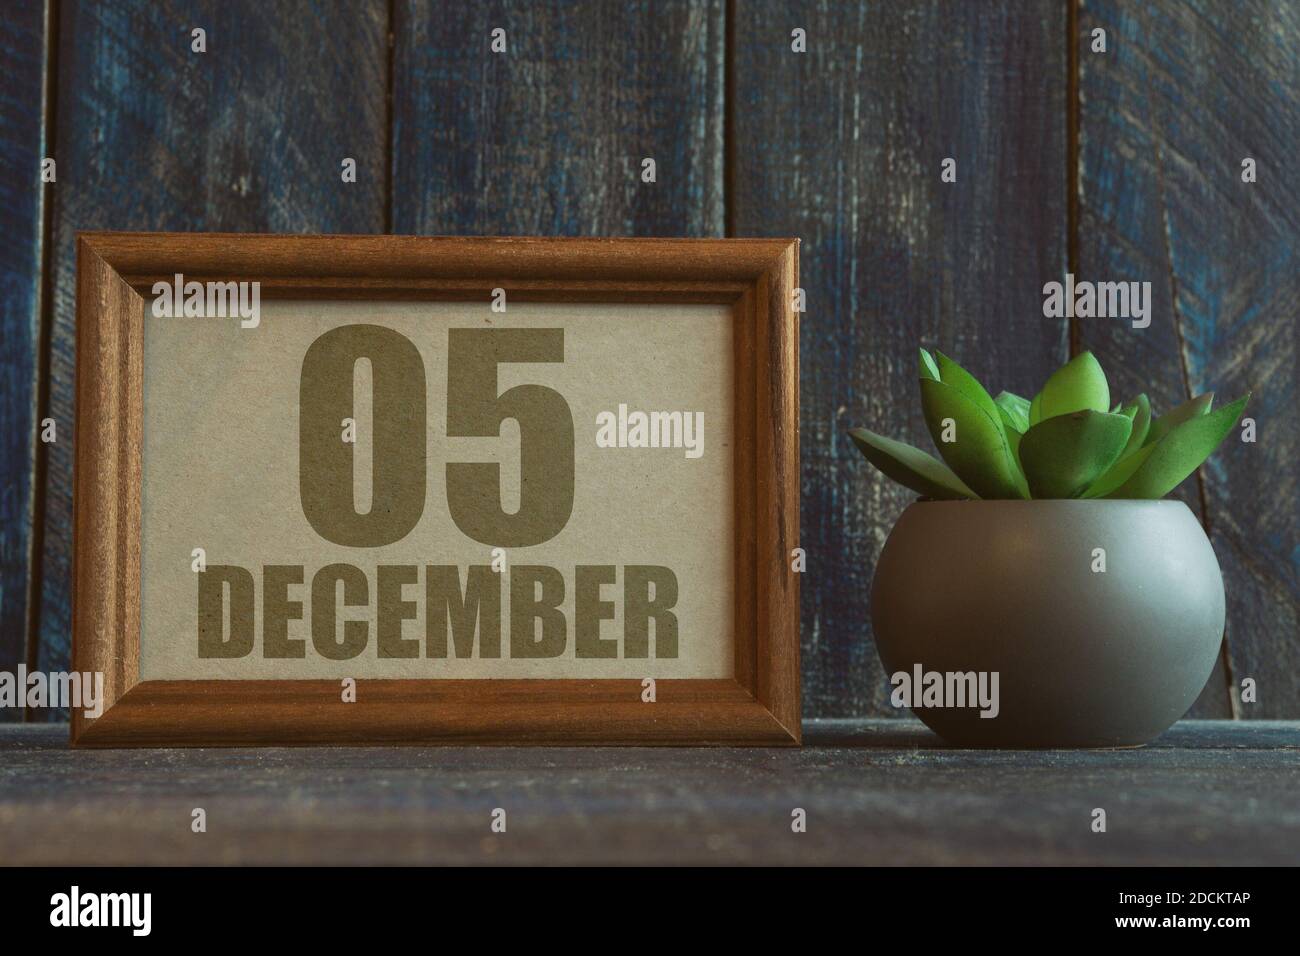 dezember. Tag 5 des Monats, Datum im Rahmen neben Sukkulenten auf Holzhintergrund Wintermonat, Tag des Jahres Konzept. Stockfoto